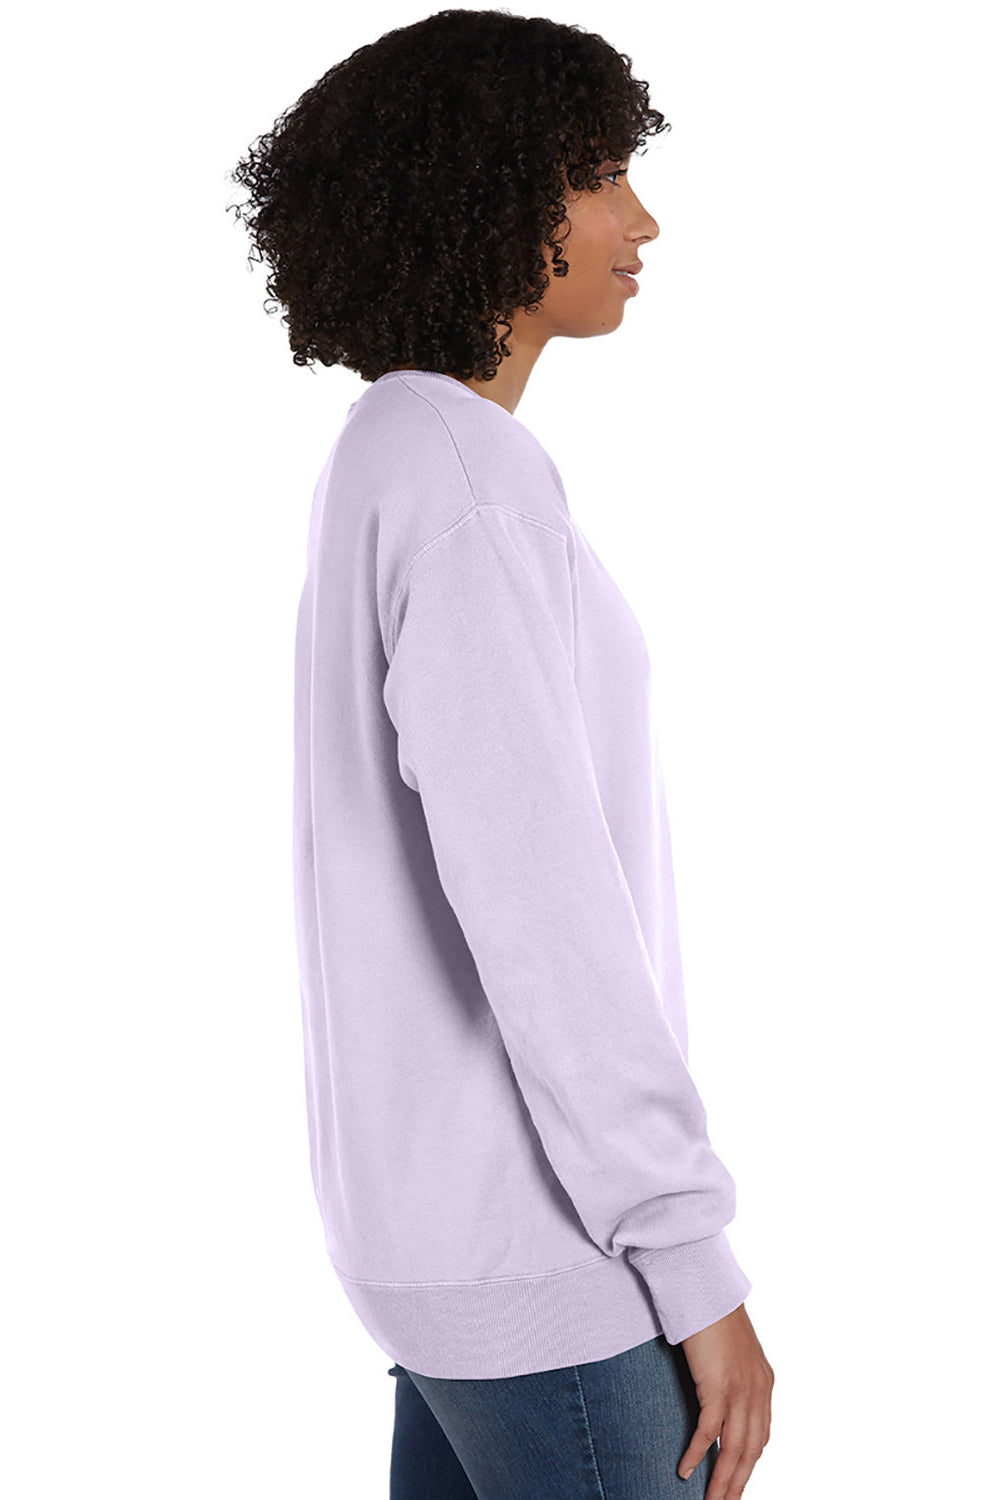 ComfortWash by Hanes Mens Crewneck Sweatshirt - Future Lavender Purple